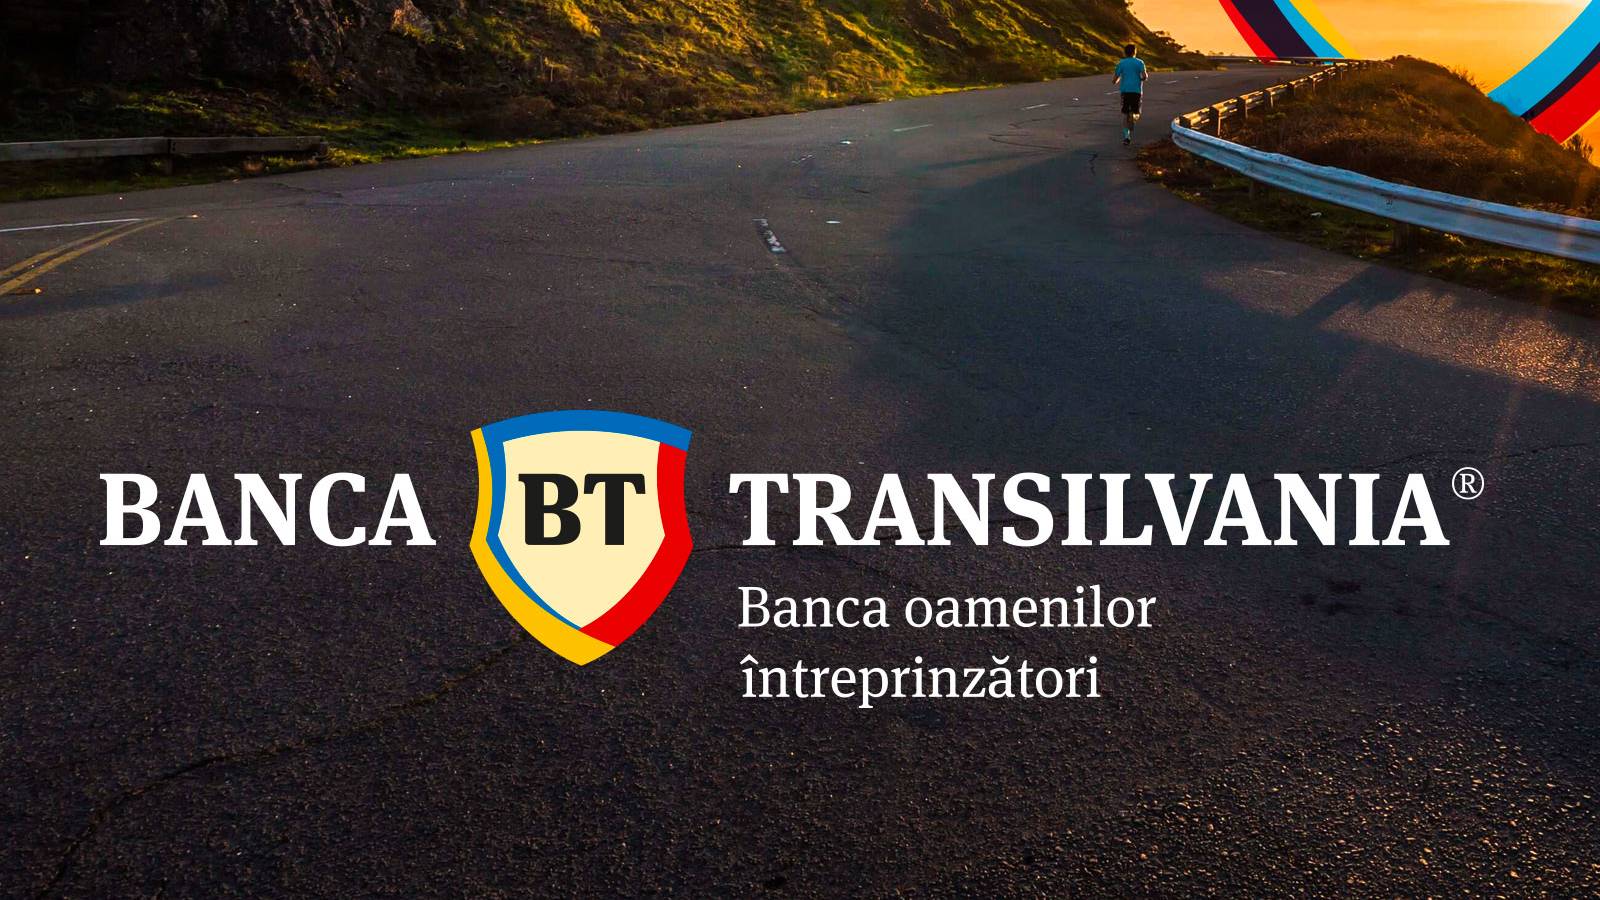 BANCA Transilvania switching